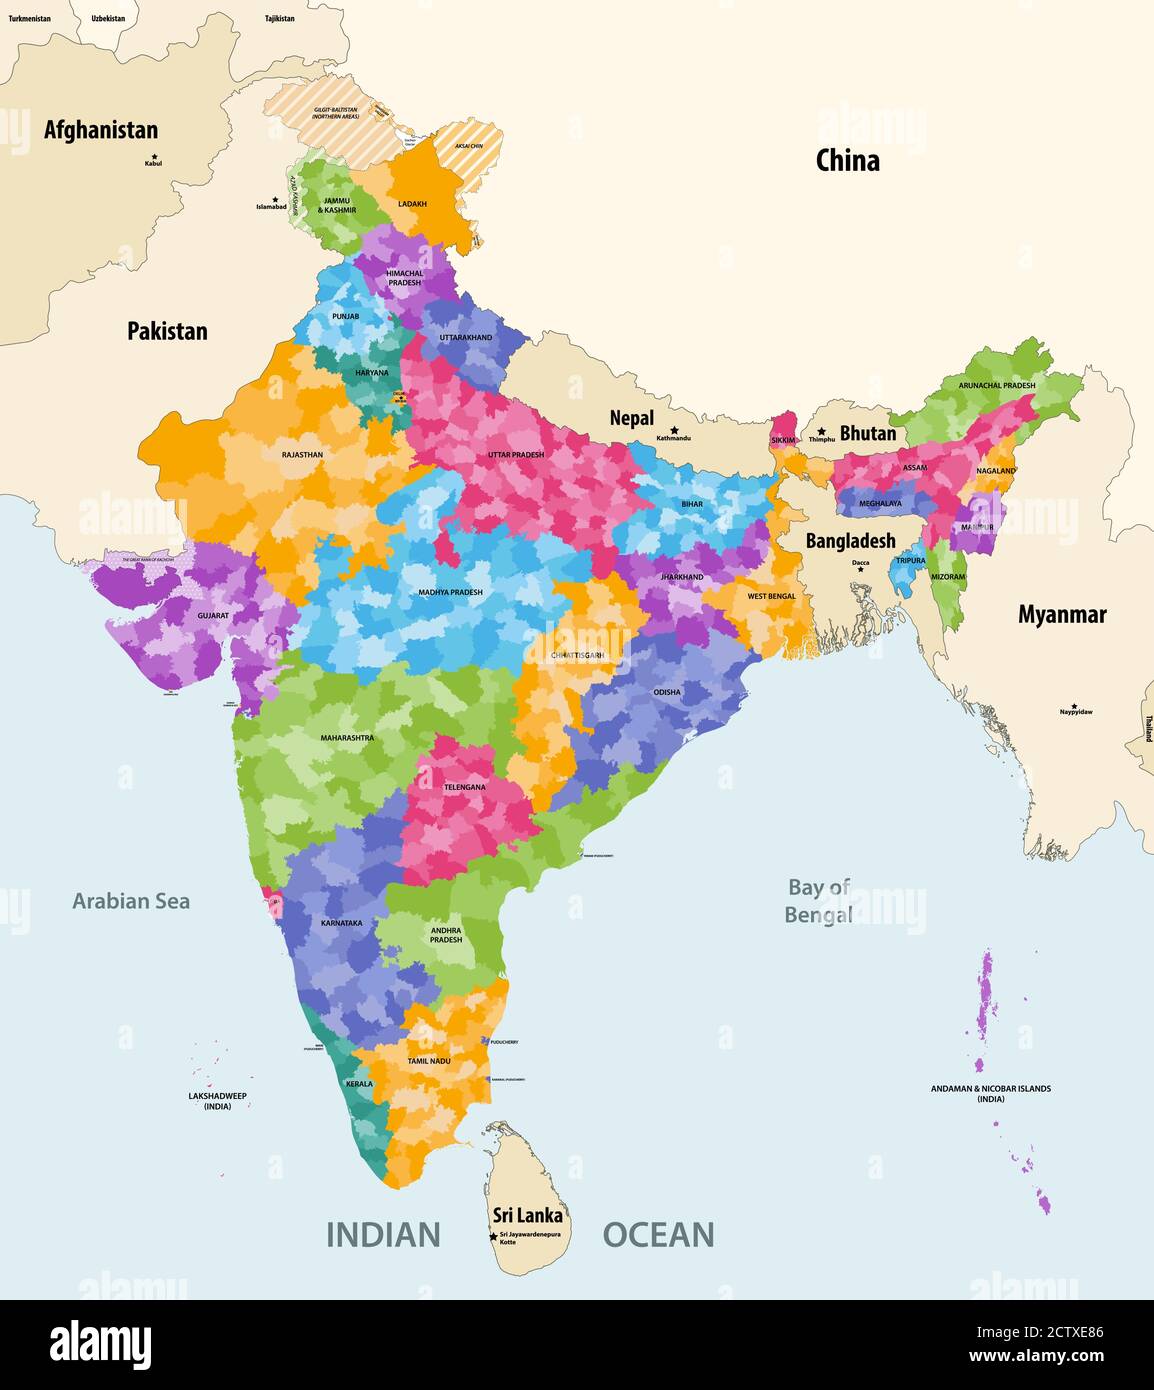 Mappa dell'India con paesi e territori vicini. Mappa indiana colorata da stati e che mostra i confini dei distretti all'interno di ogni stato. Vettore Illustrazione Vettoriale